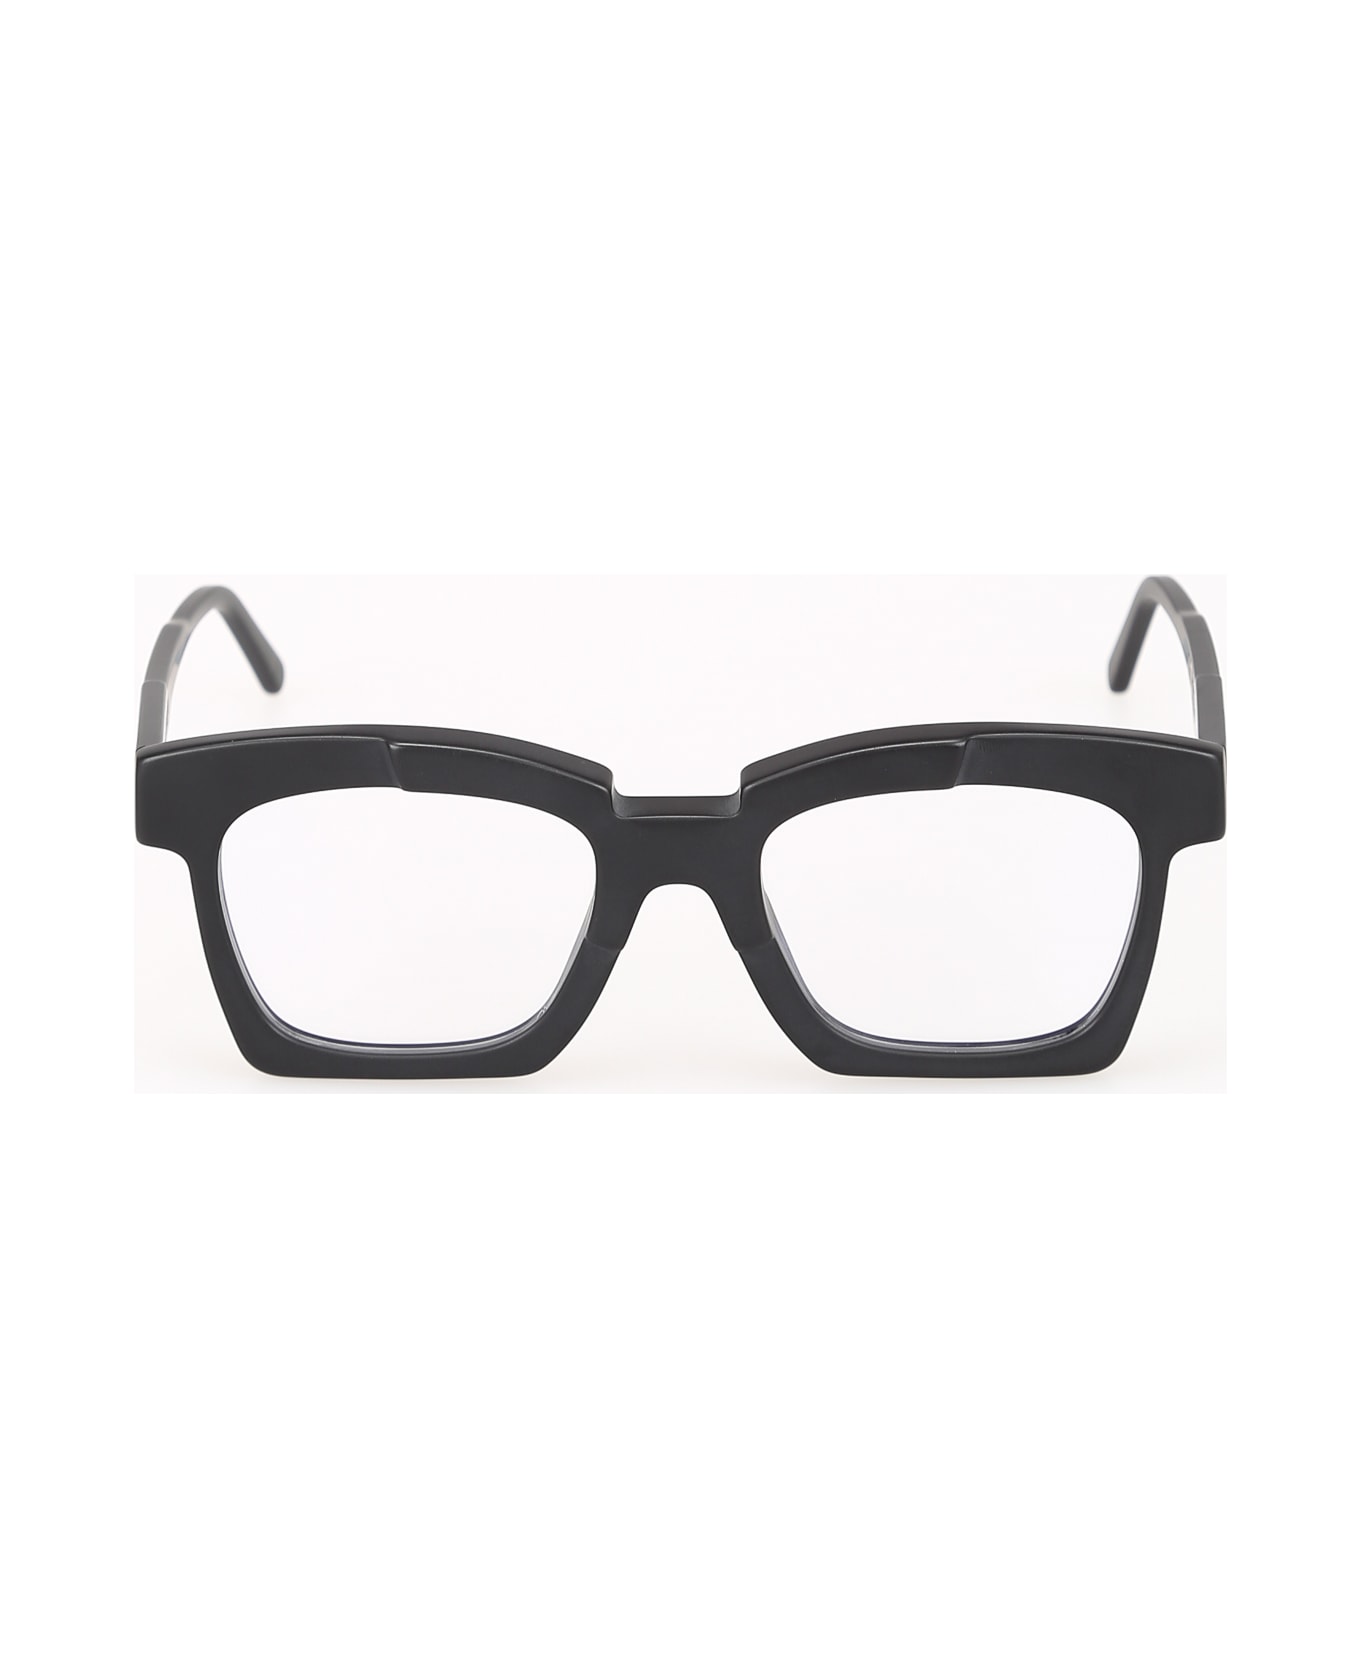 Kuboraum K5 Eyewear - Bm